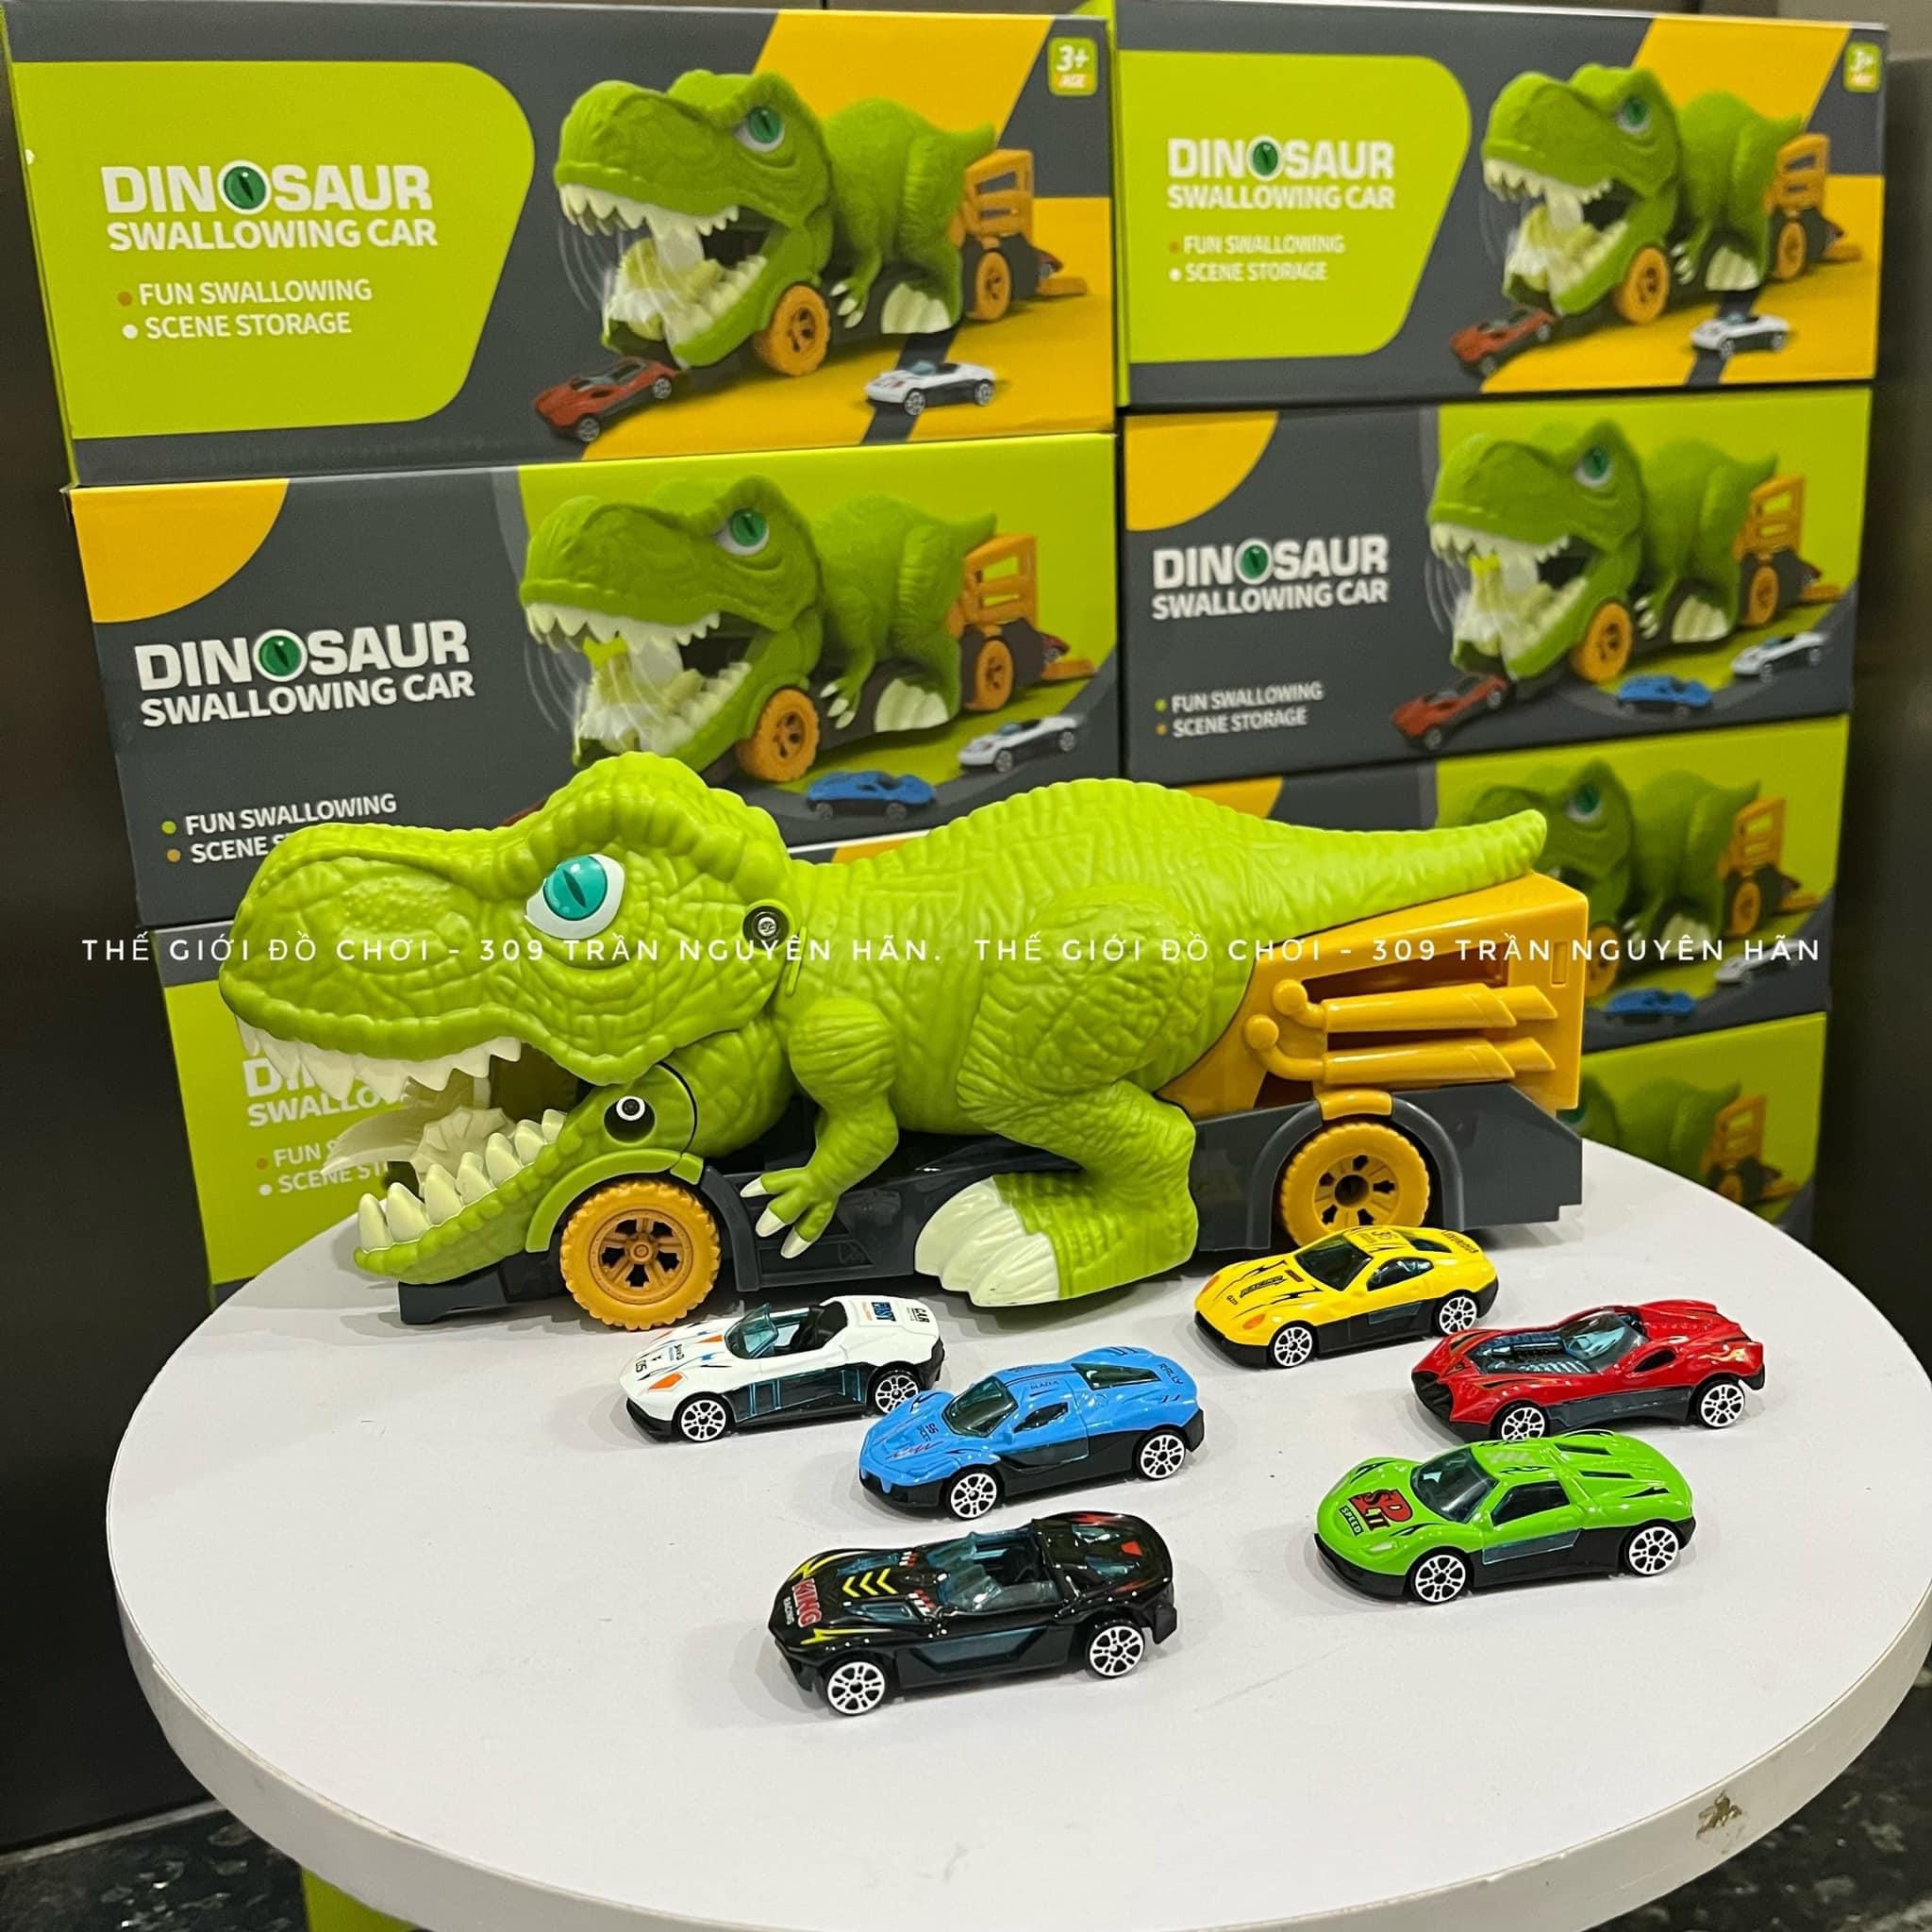 Đồ chơi khủng long nuốt ô tô (Tặng kèm 6 xe ô tô mini) mô phỏng quá trình săn mồi của khủng long, thiết kế độc đáo cho bé chơi và tìm hiểu thế giới xung quanh